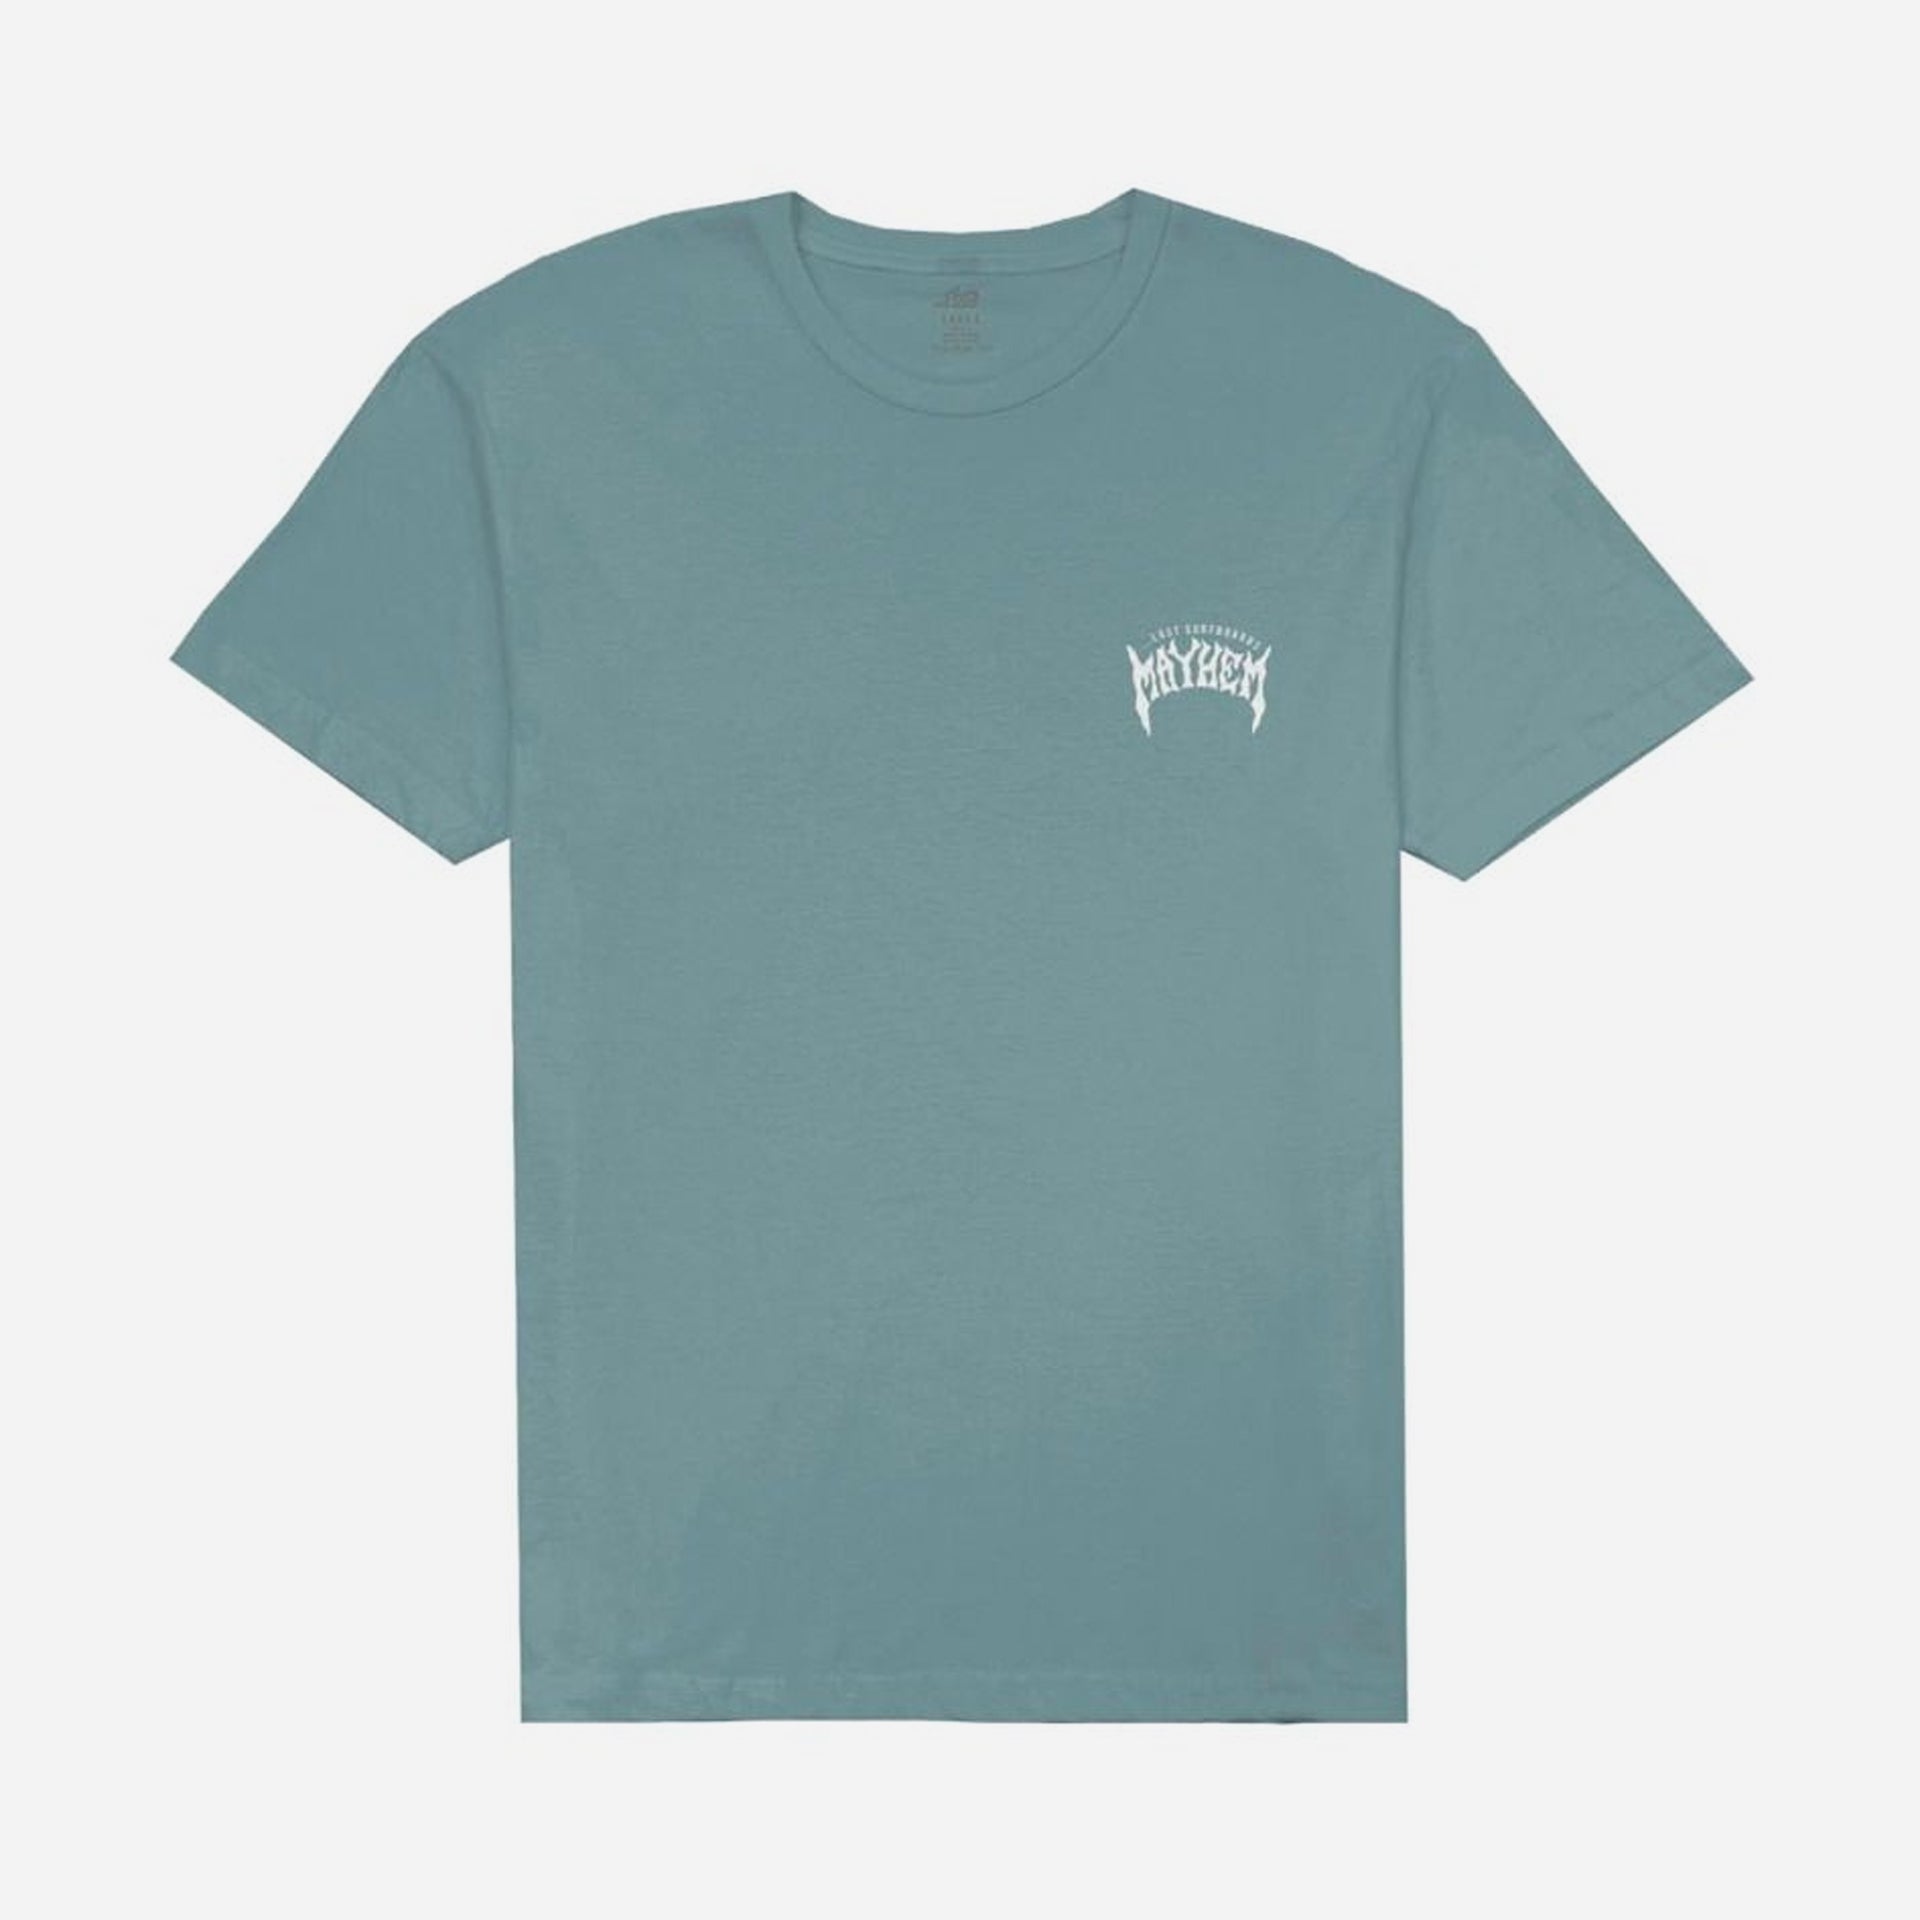 Lost Mens Mayhem Designs T-Shirt - Seafoam